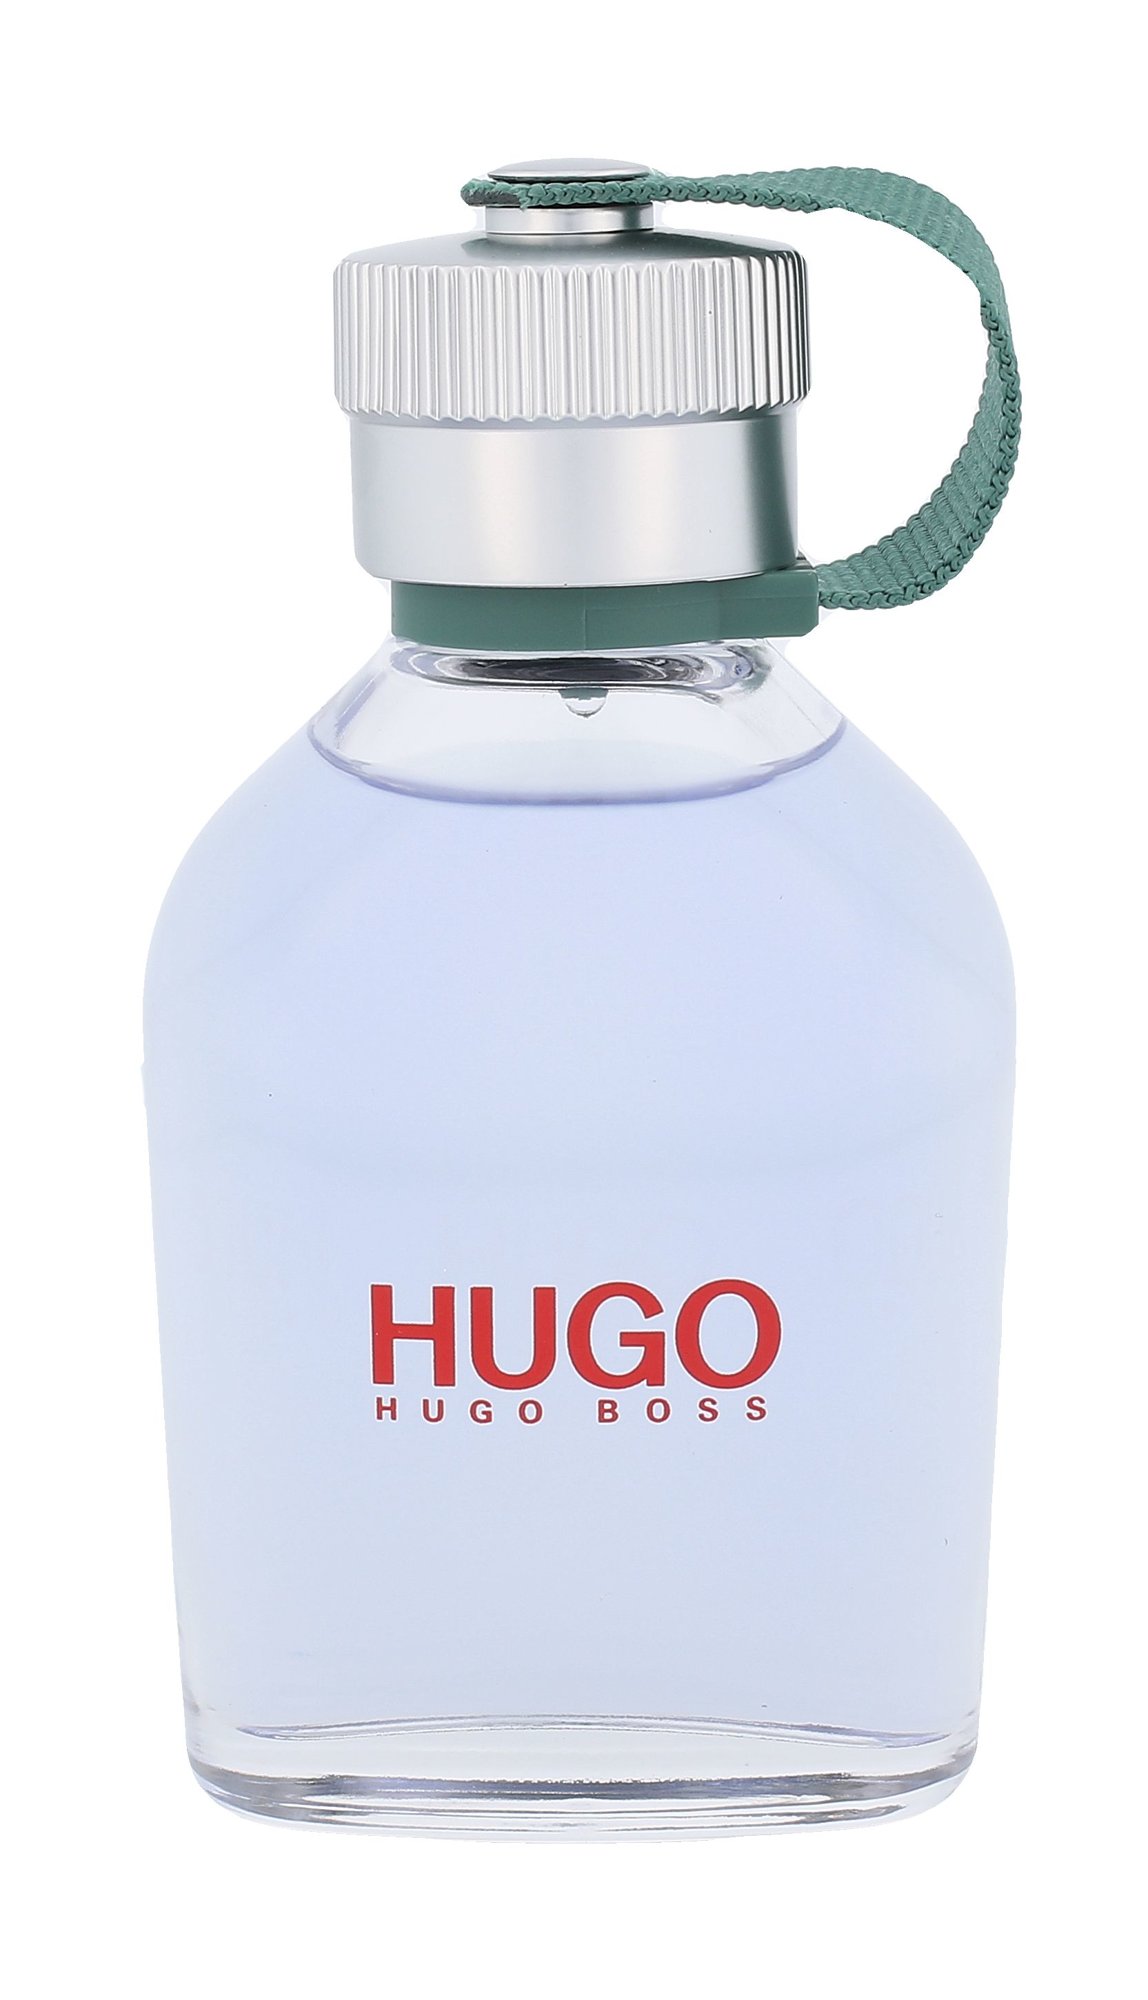 Hugo Boss Hugo 75ml vanduo po skutimosi